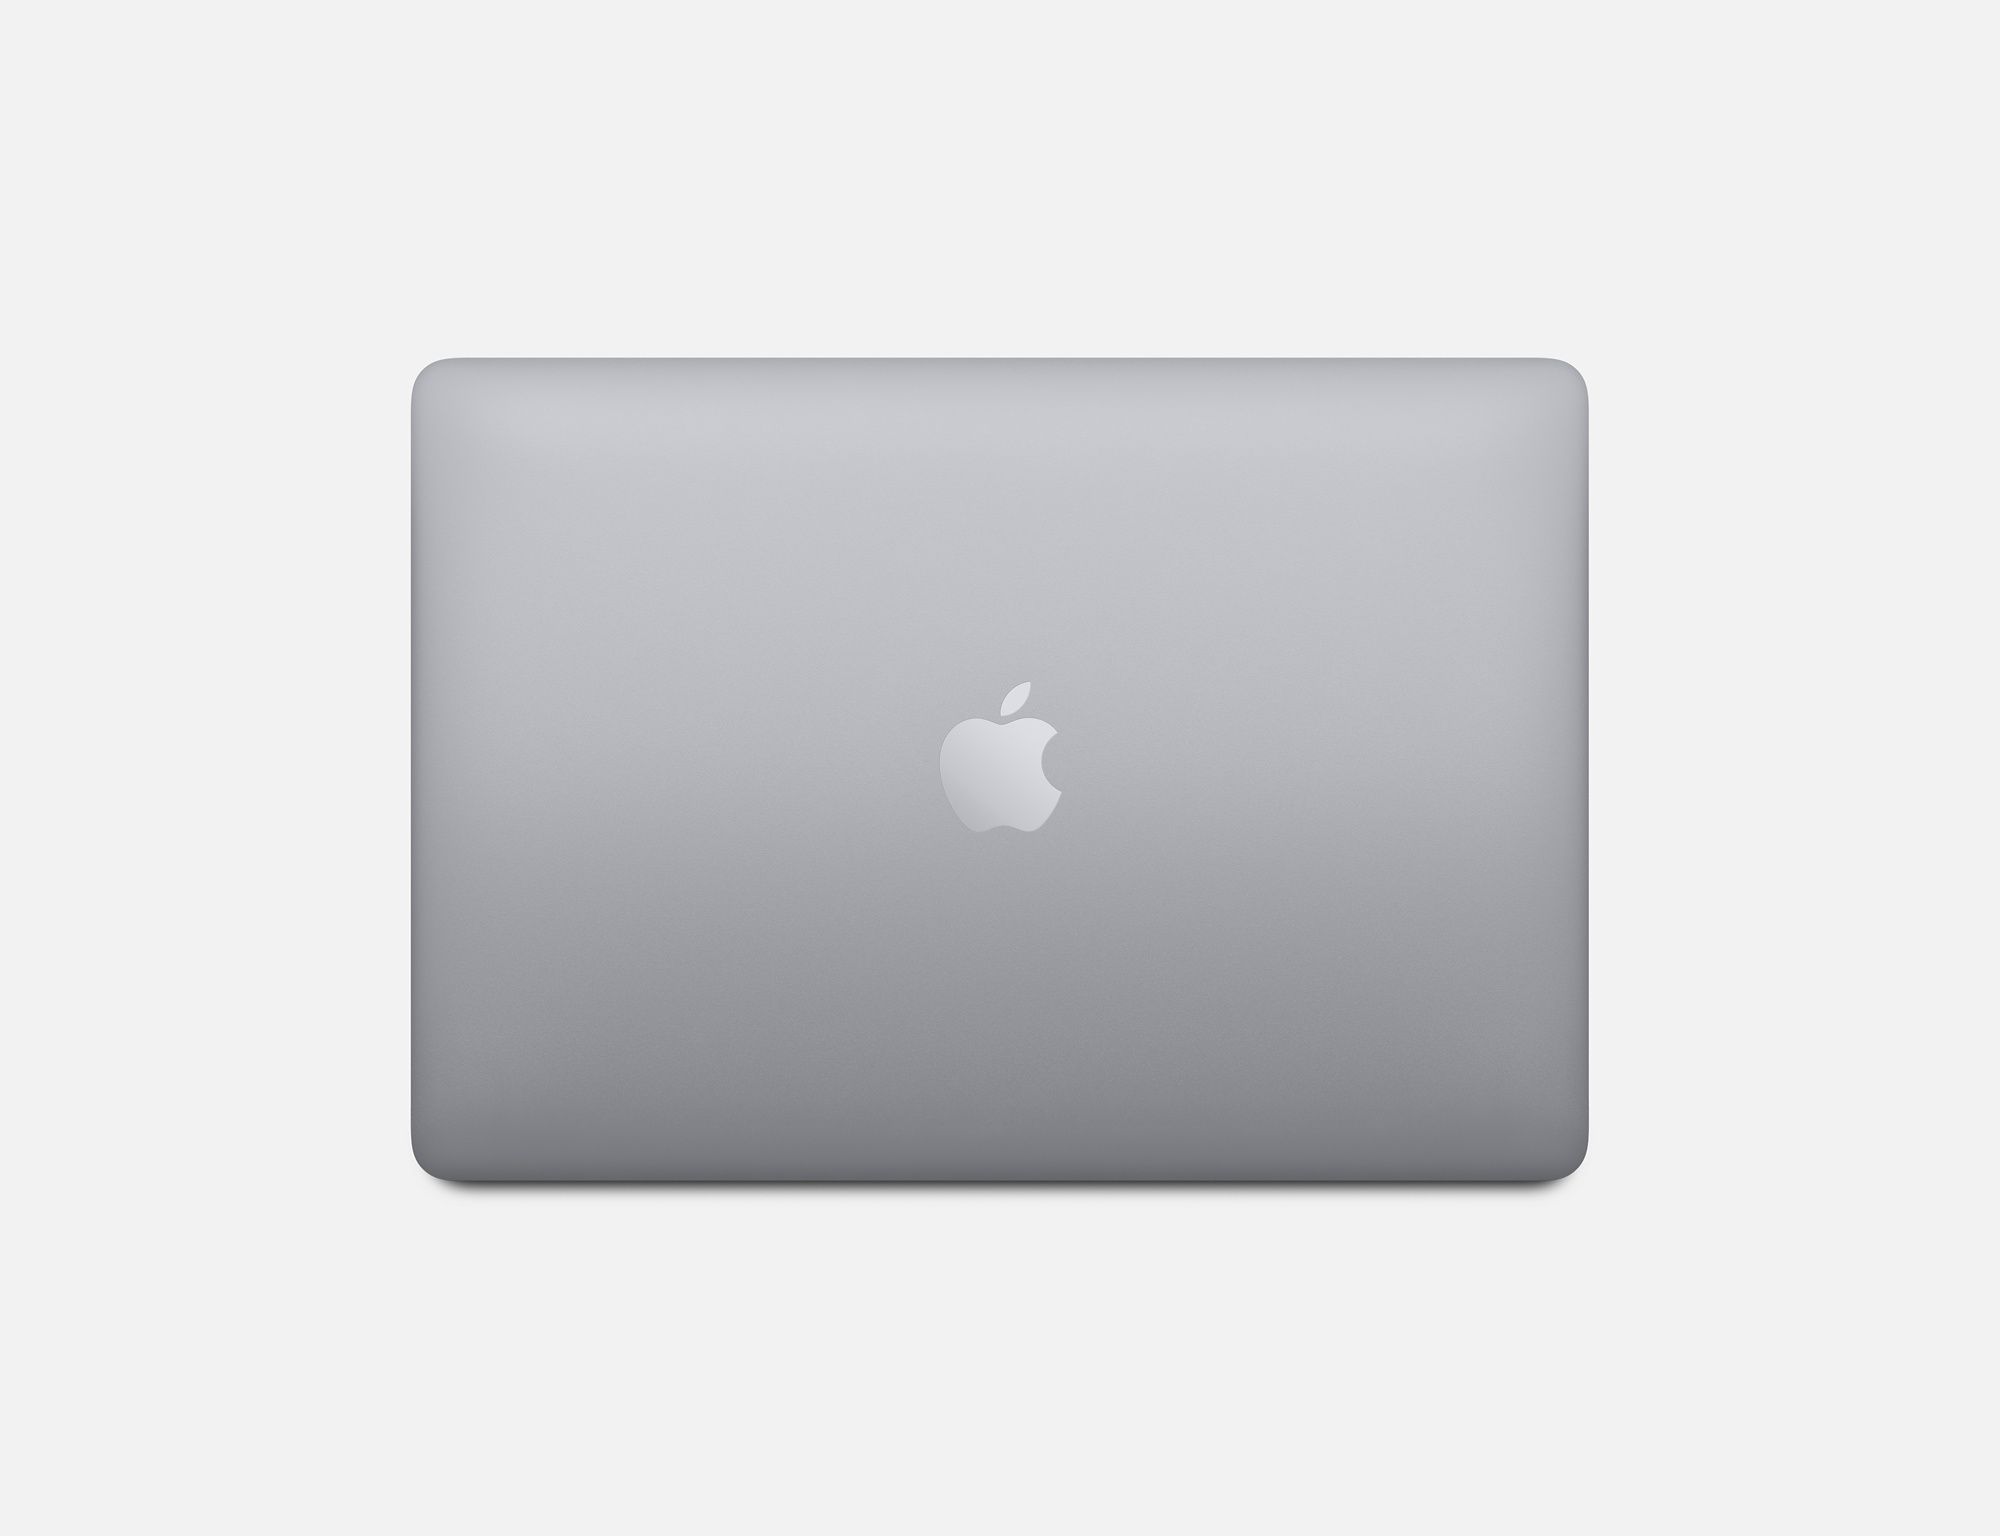 MacBook Pro Design 2